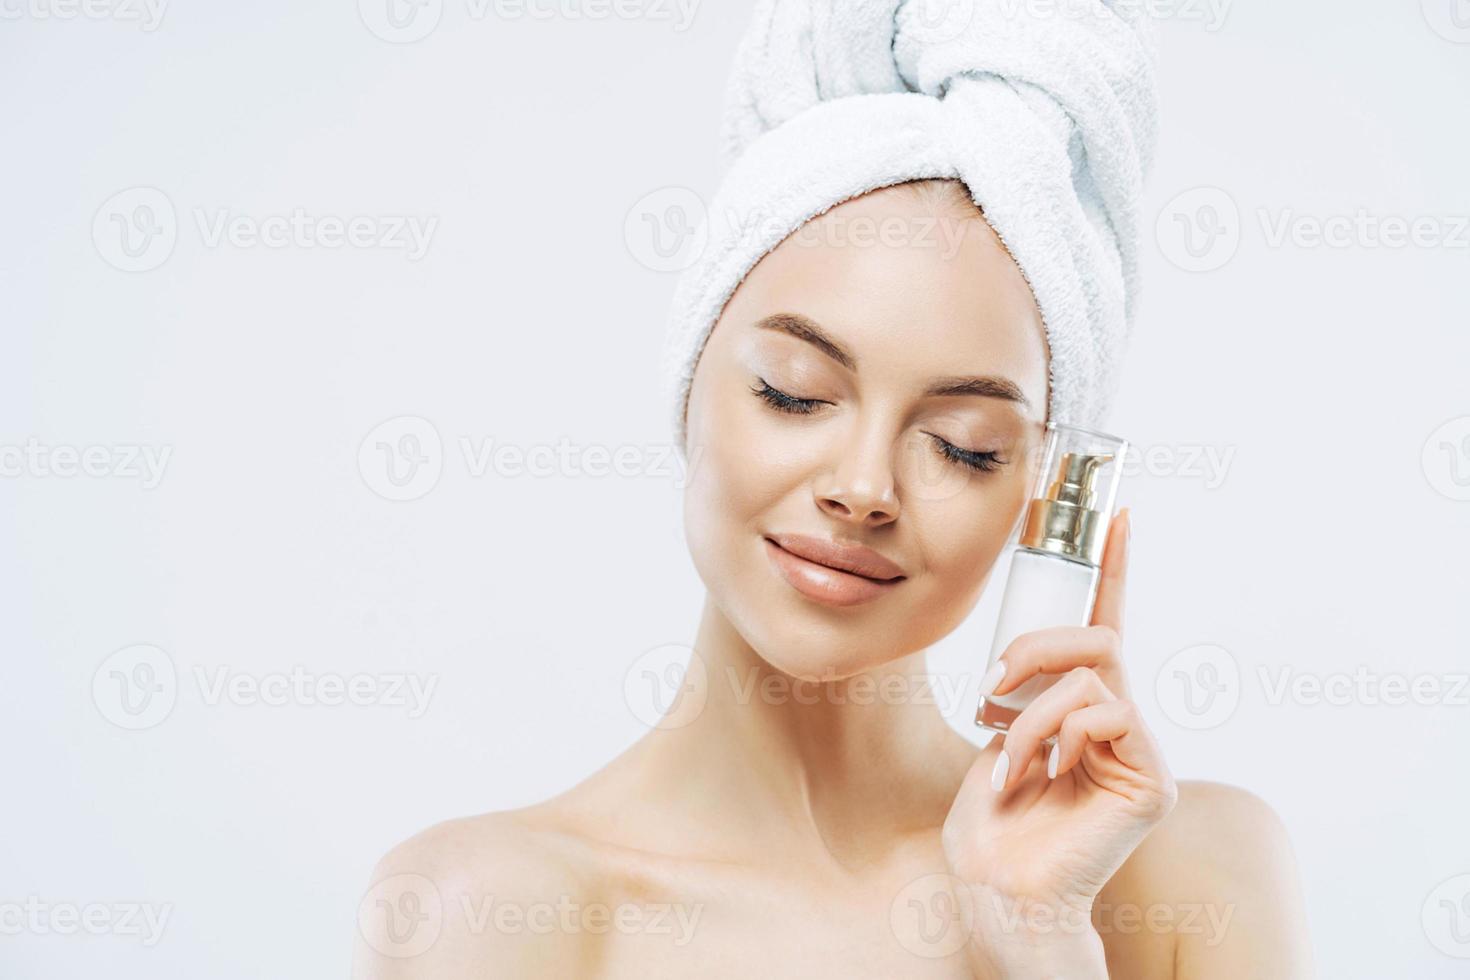 hautpflege, kosmetikkonzept. Foto einer entspannten, gesunden jungen Europäerin steht mit geschlossenen Augen, hält eine Flasche Kosmetikprodukt für elastische Haut, posiert halbnackt vor weißem Hintergrund.